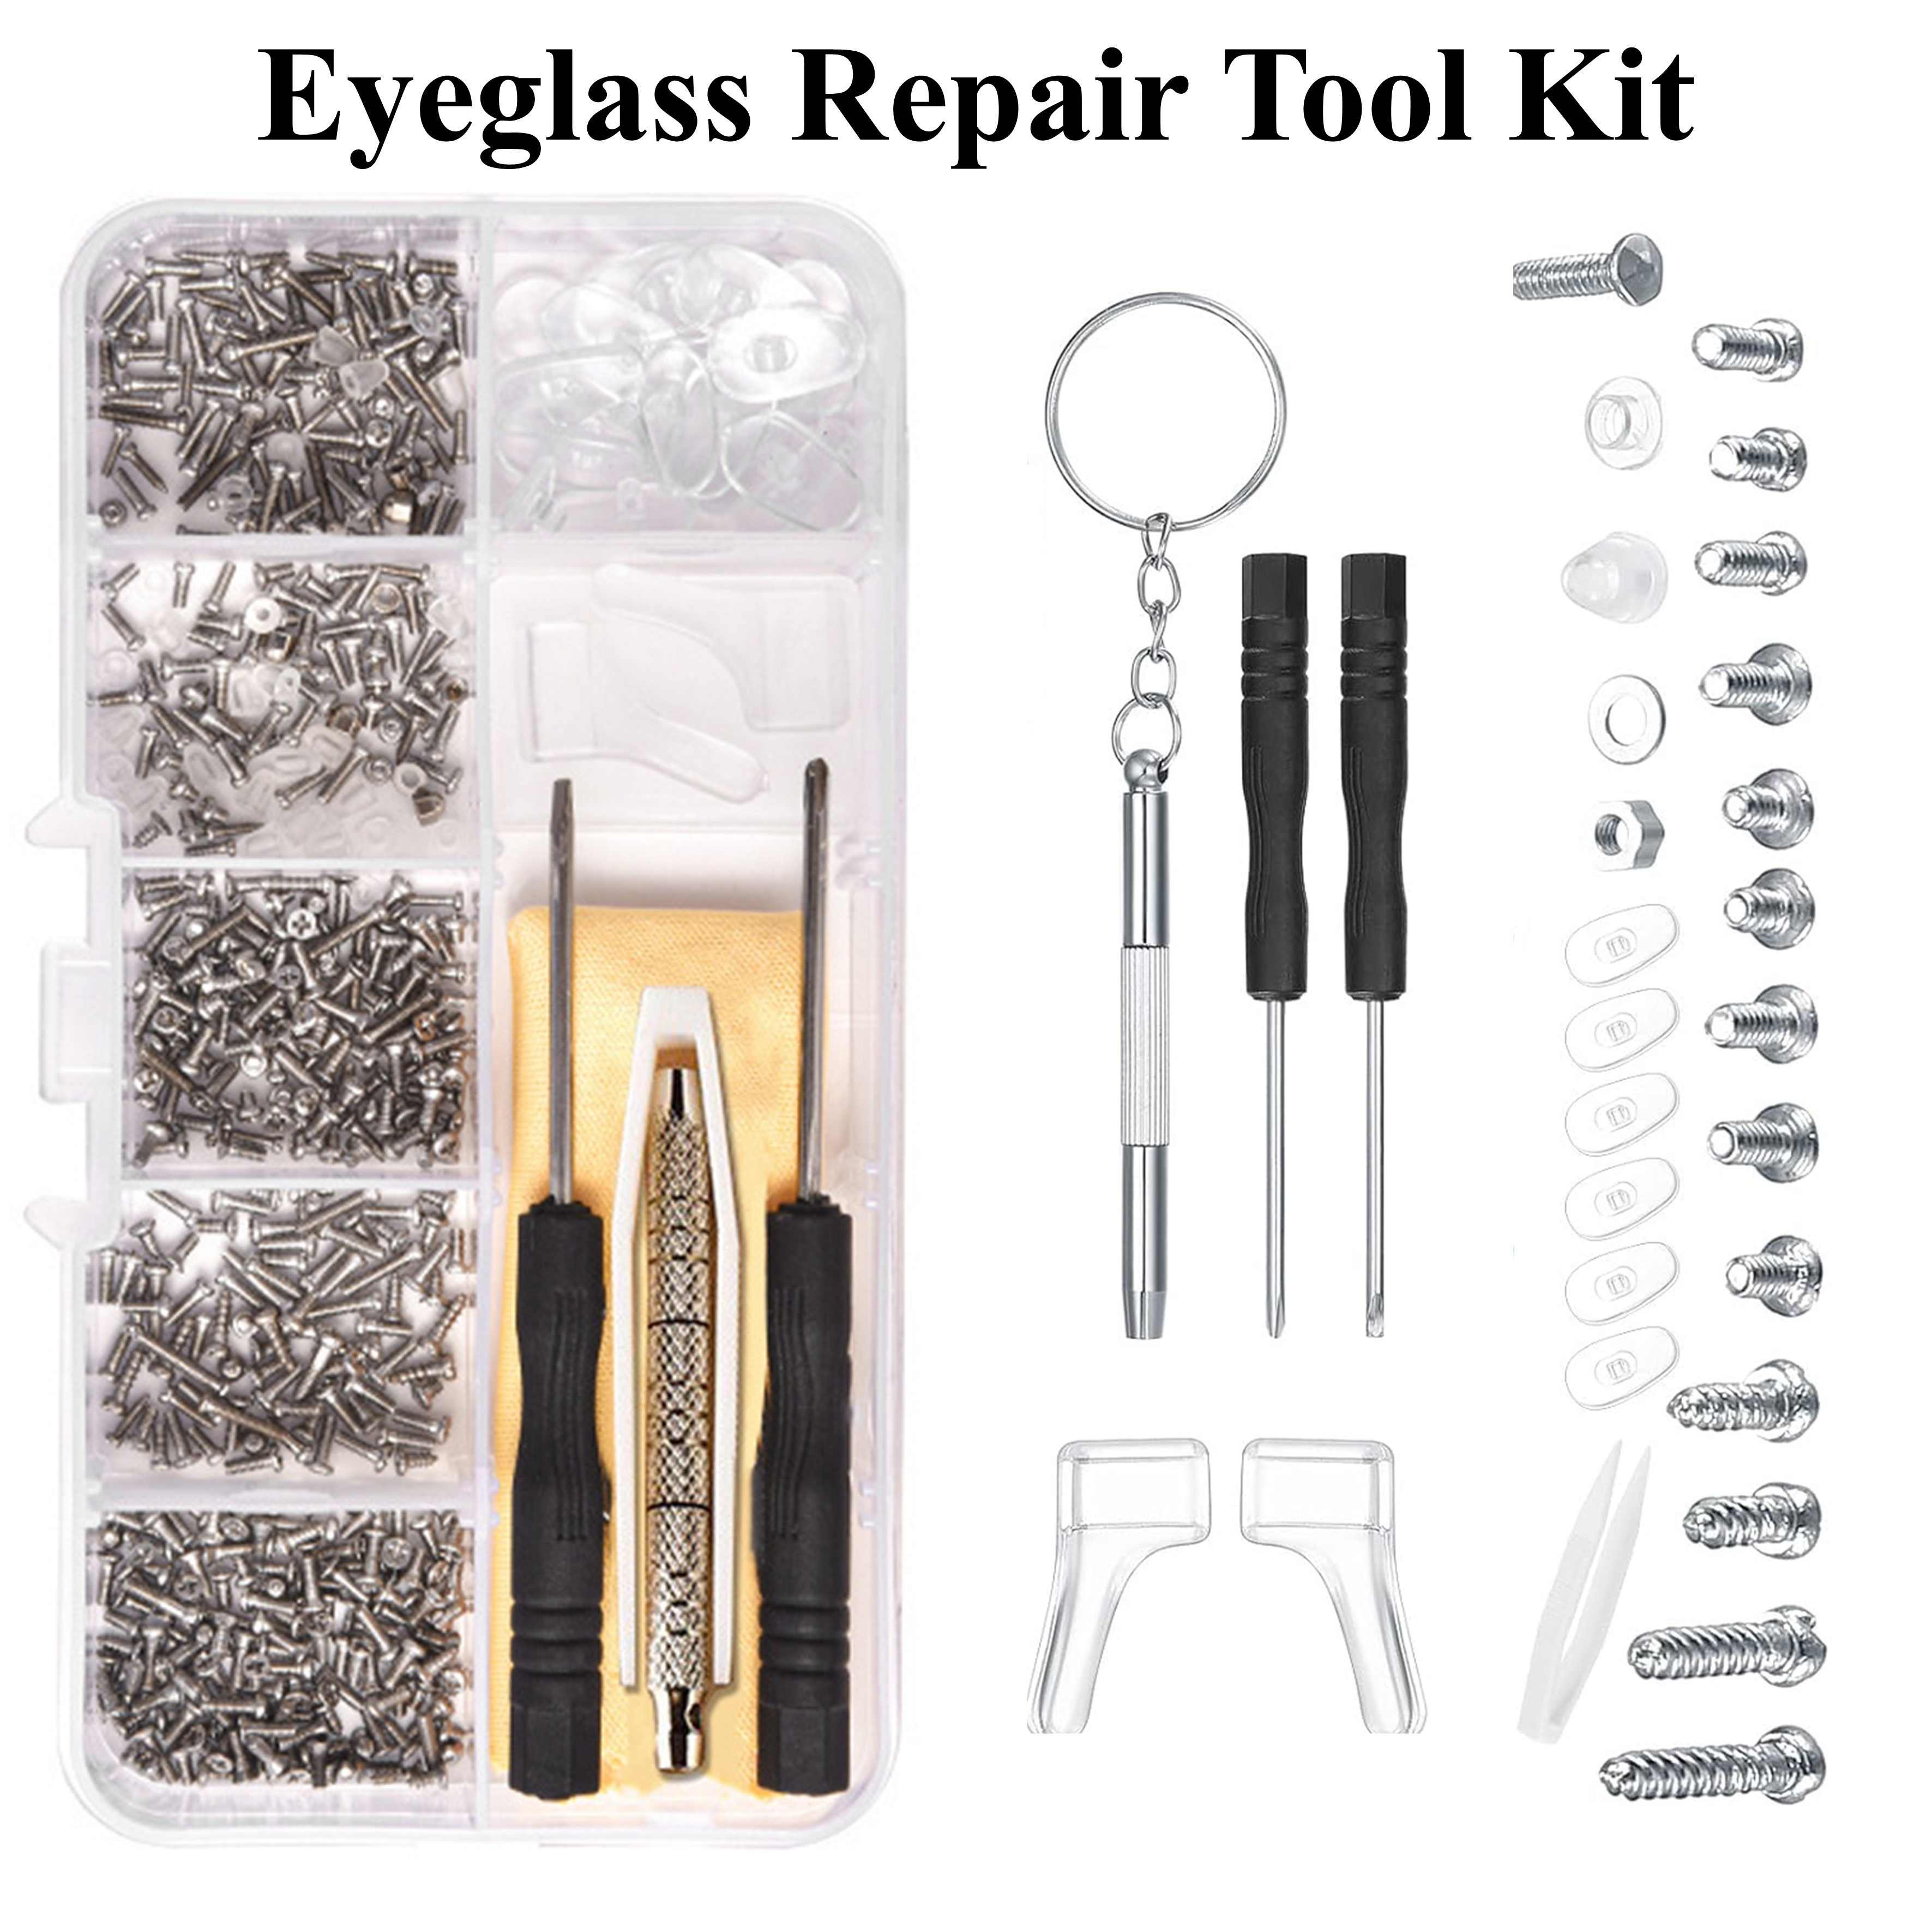 Kit de reparación de lentes con tornillos para gafas. Incluye kit de  destornillador de precisión y almohadilla para la nariz, paño de limpieza,  pinzas